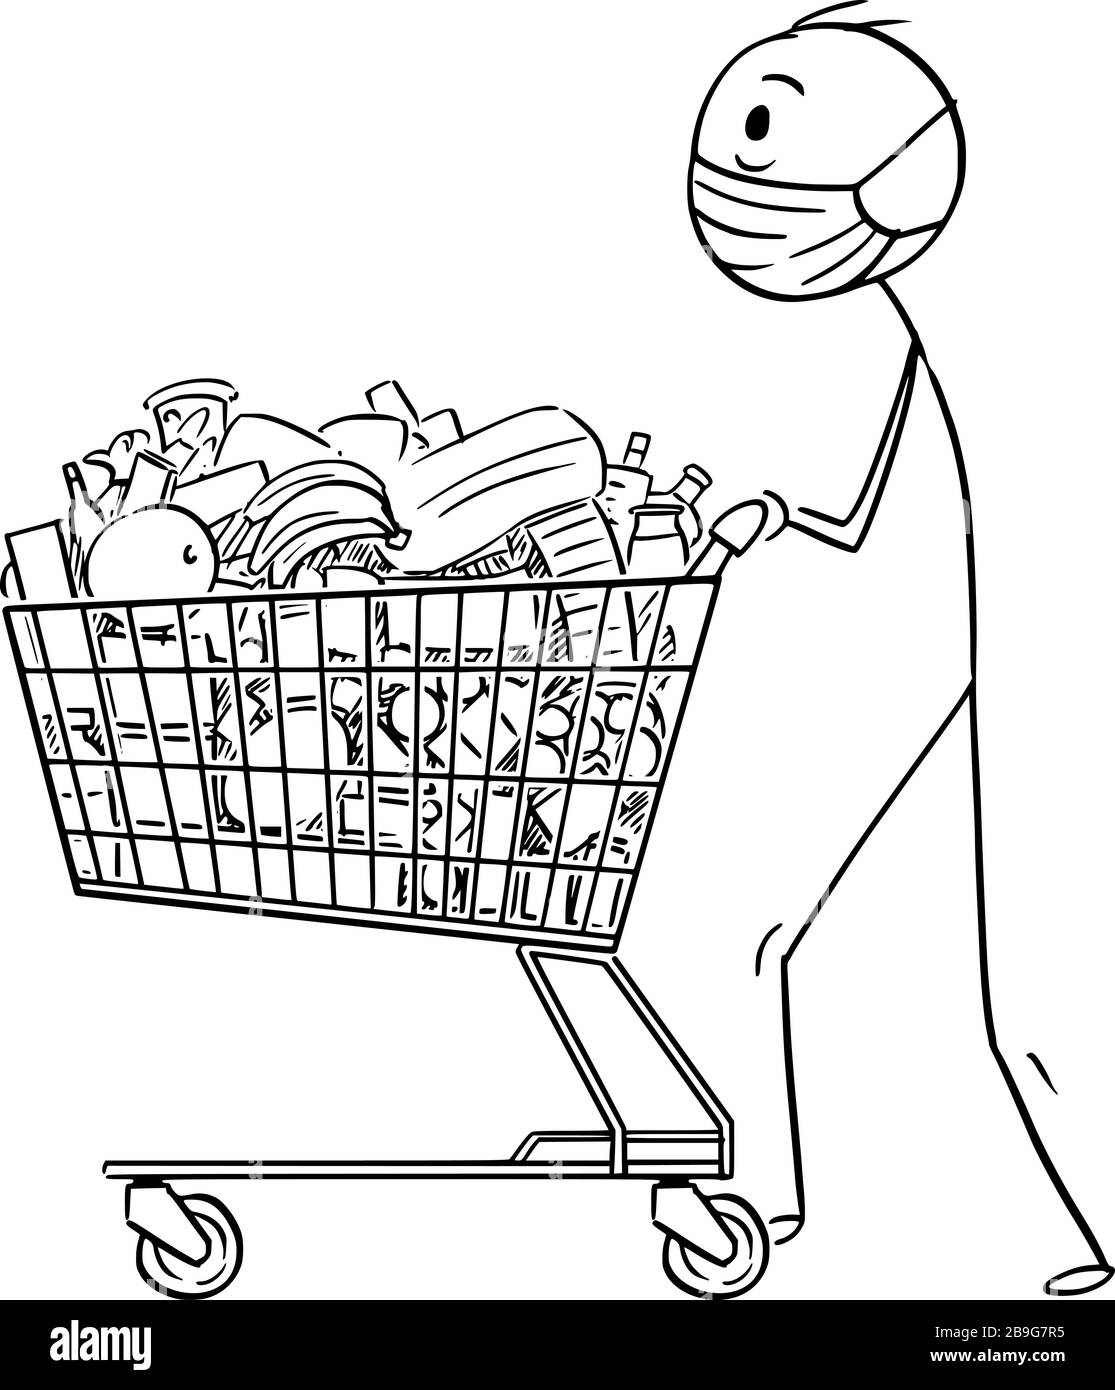 Figura di bastone cartoon vettoriale disegno illustrazione concettuale di uomo che indossa maschera facciale che spinge il carrello con il cibo dal negozio di alimentari o supermercato. Concetto di epidemia di coronavirus COVID-19. Illustrazione Vettoriale